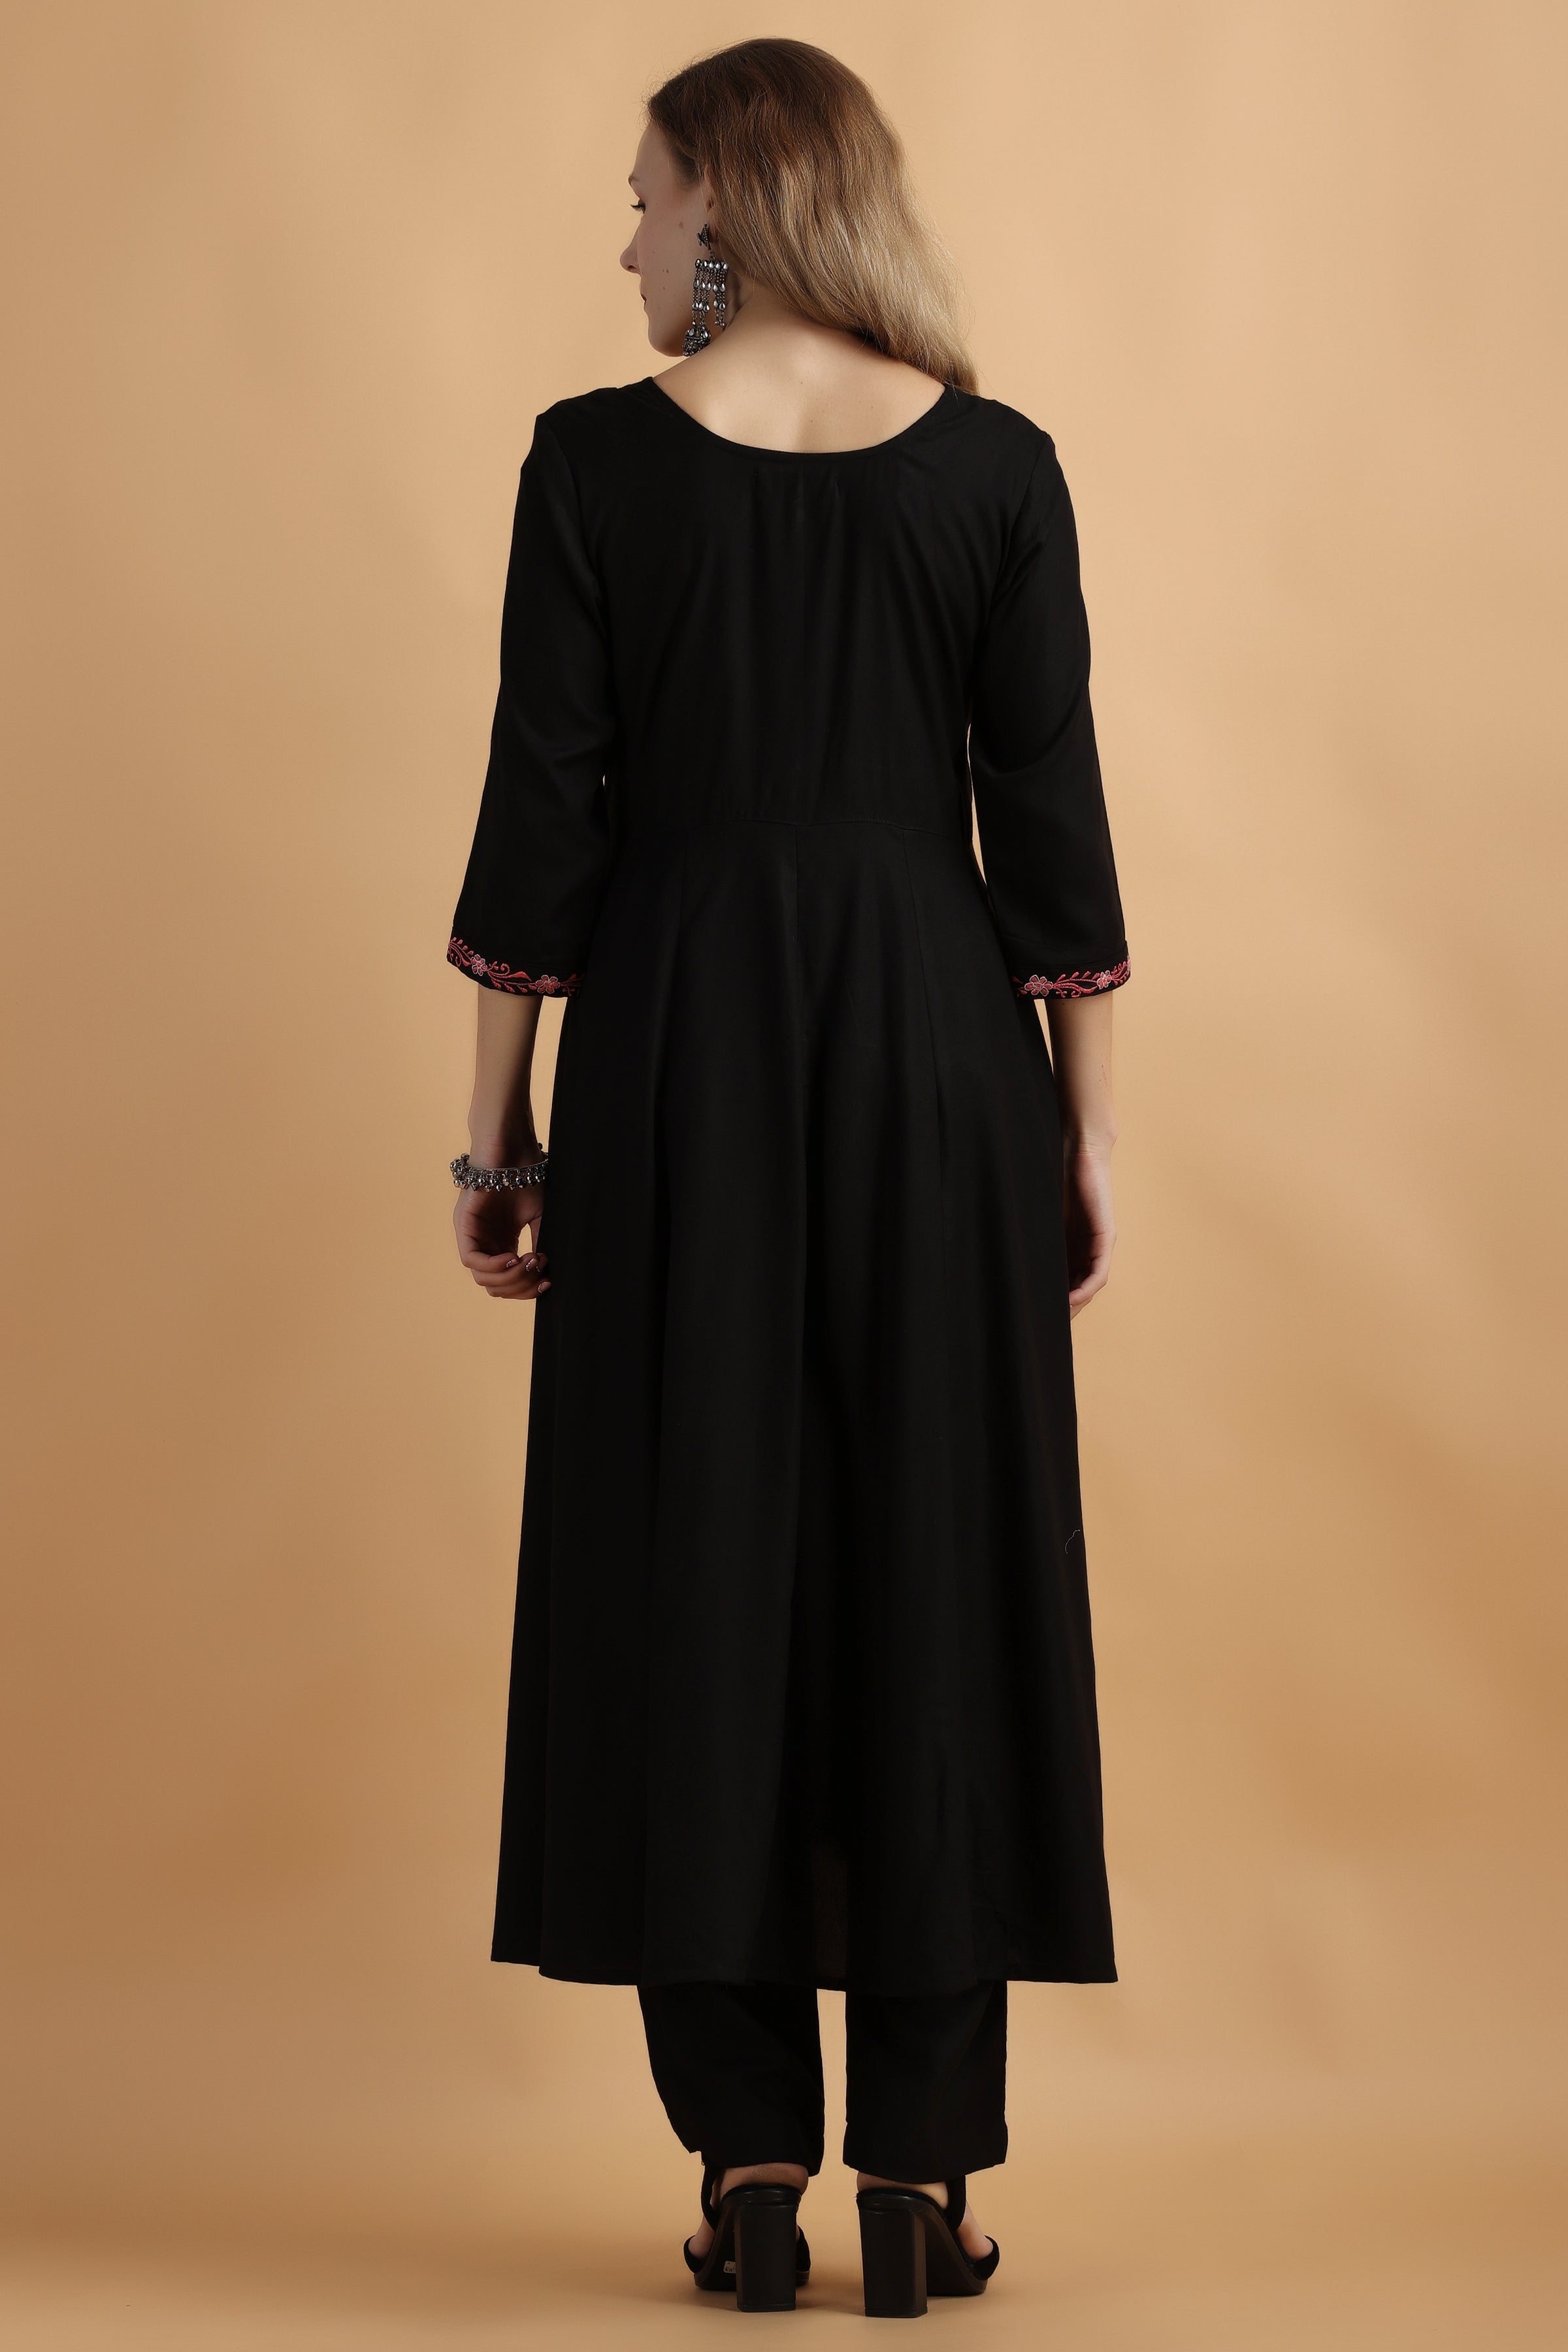 Georgette Plain Anarkali Suit In Black Color With Dupatta - Vatki